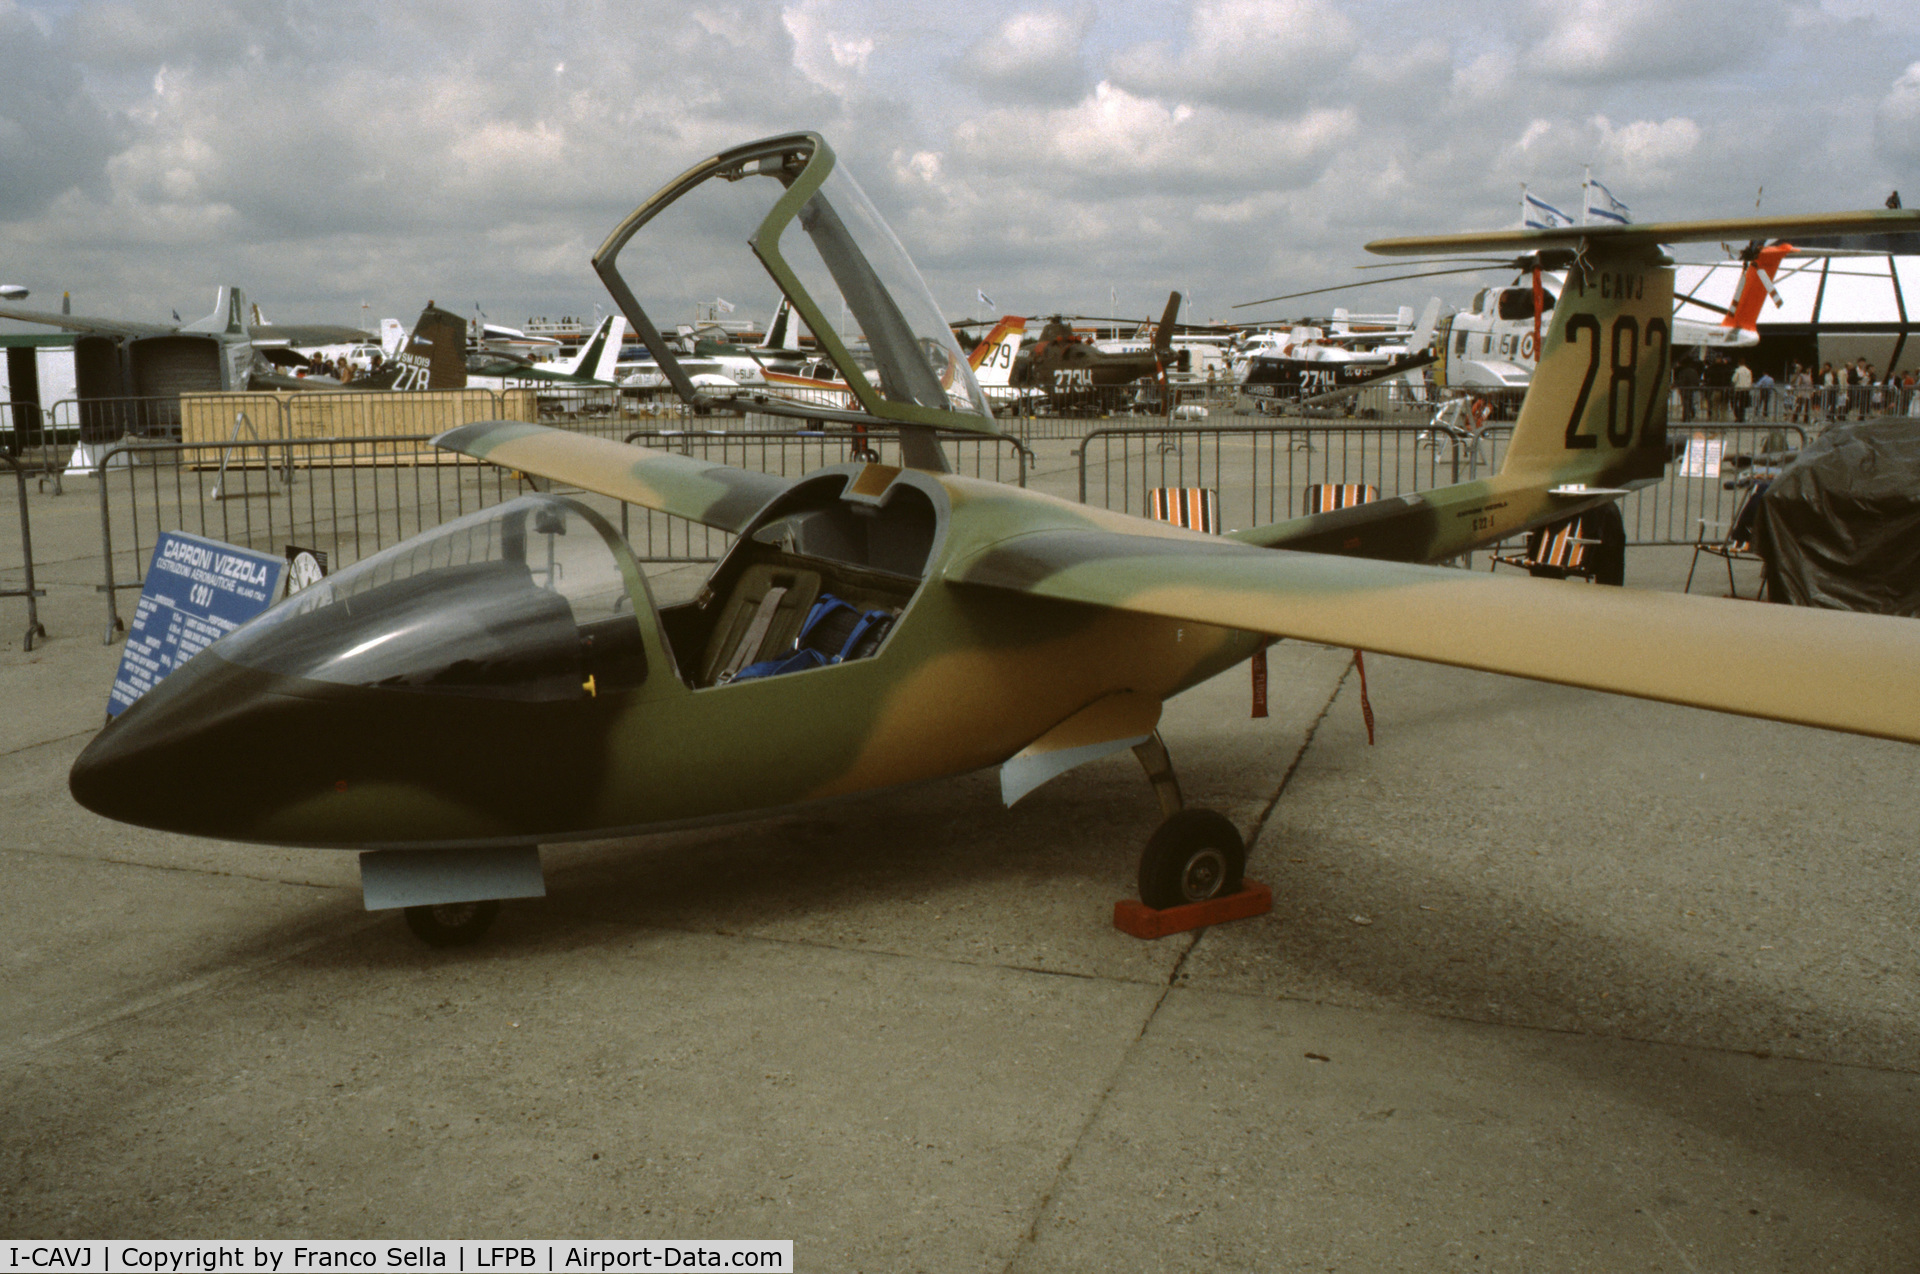 I-CAVJ, 1980 Caproni Vizzola C22J Ventura C/N 001, Caproni C22J Prototypeat the 1981 Paris Air Show